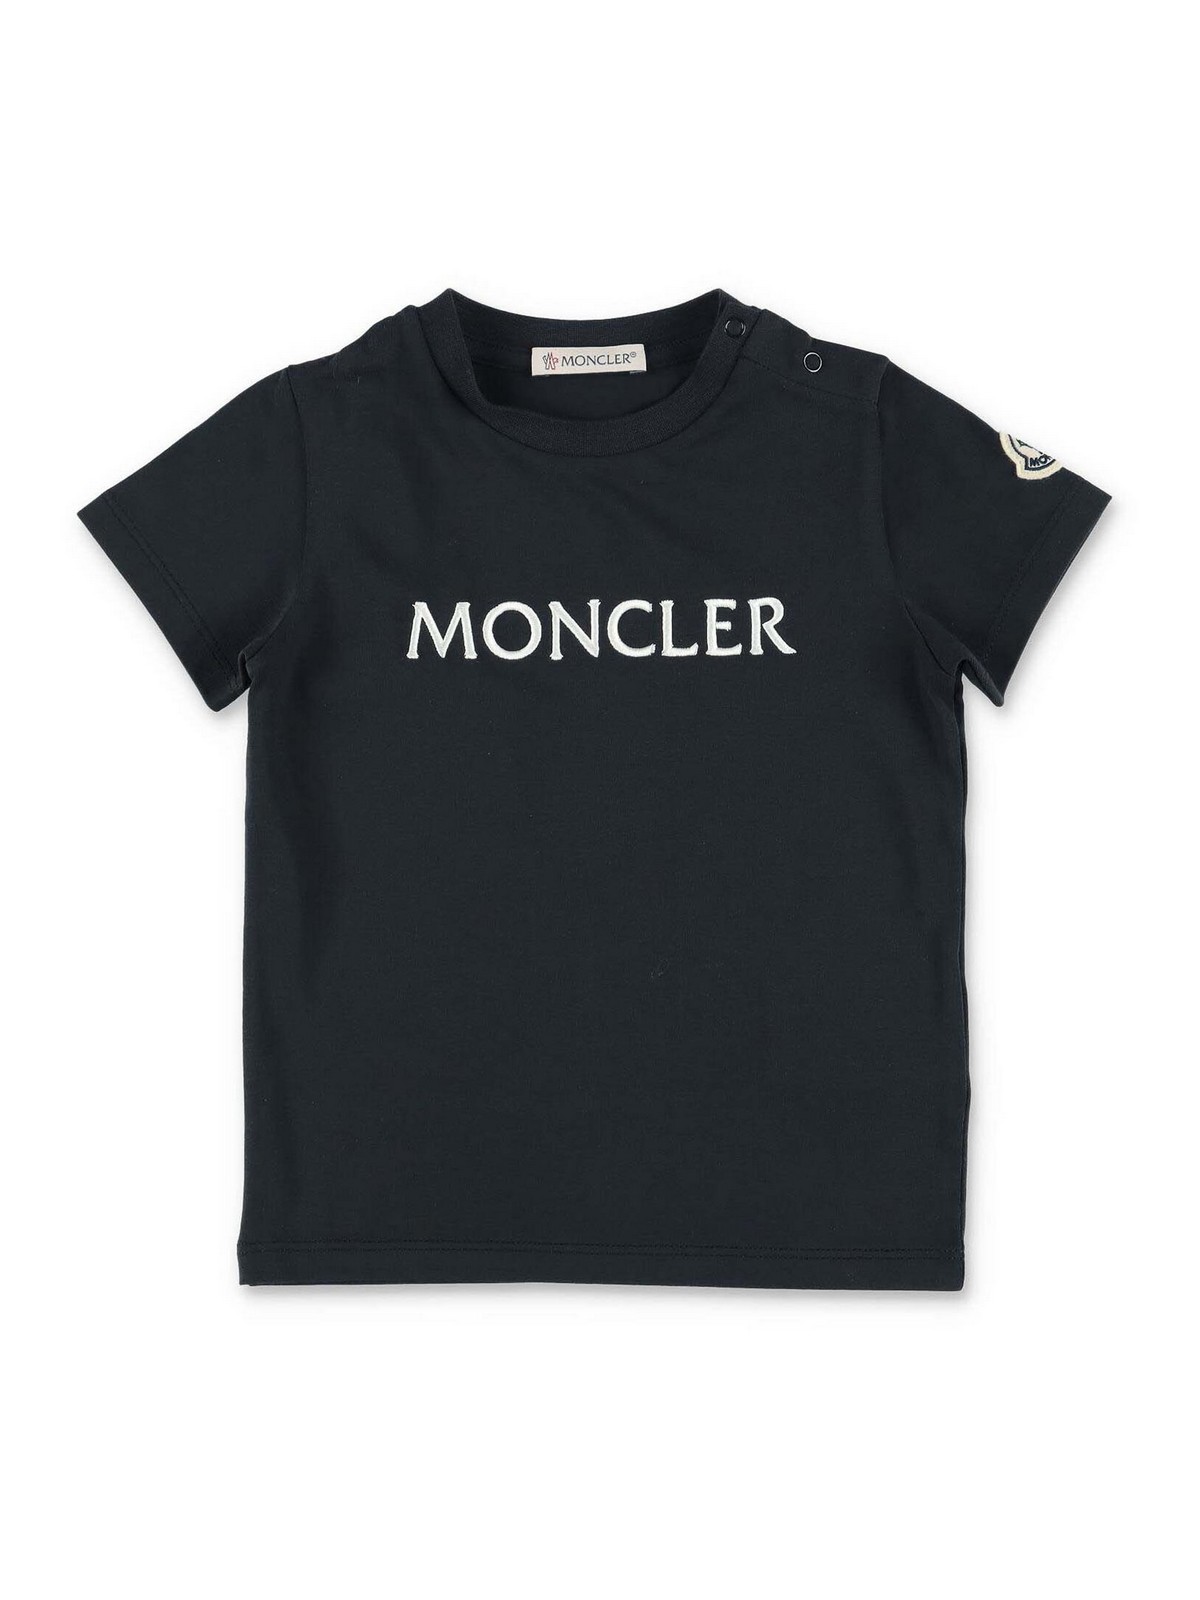 Moncler Kids' Navy Blue Cotton Jersey  T-shirt